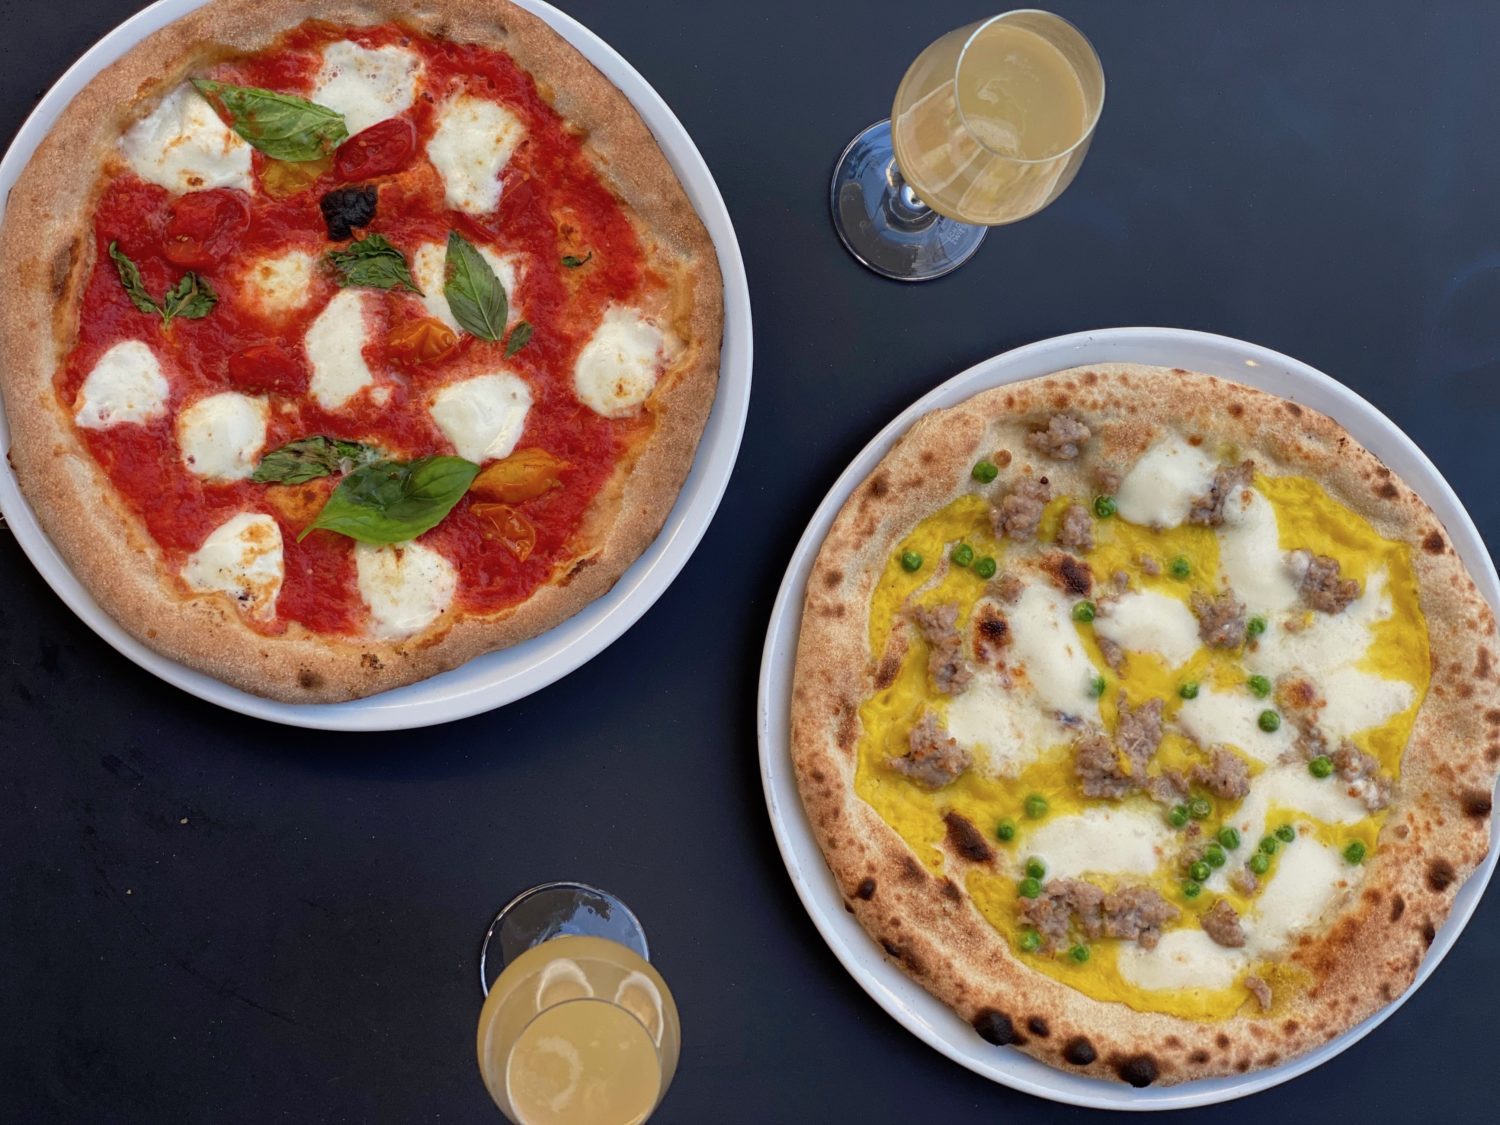 Pizza und Bellini: Sironi La Pizza ist keine klassische Pizzeria, sondern experimentiert mit verschiedenen Teigen und Belag wie Safrancrème oder Austernpilze.